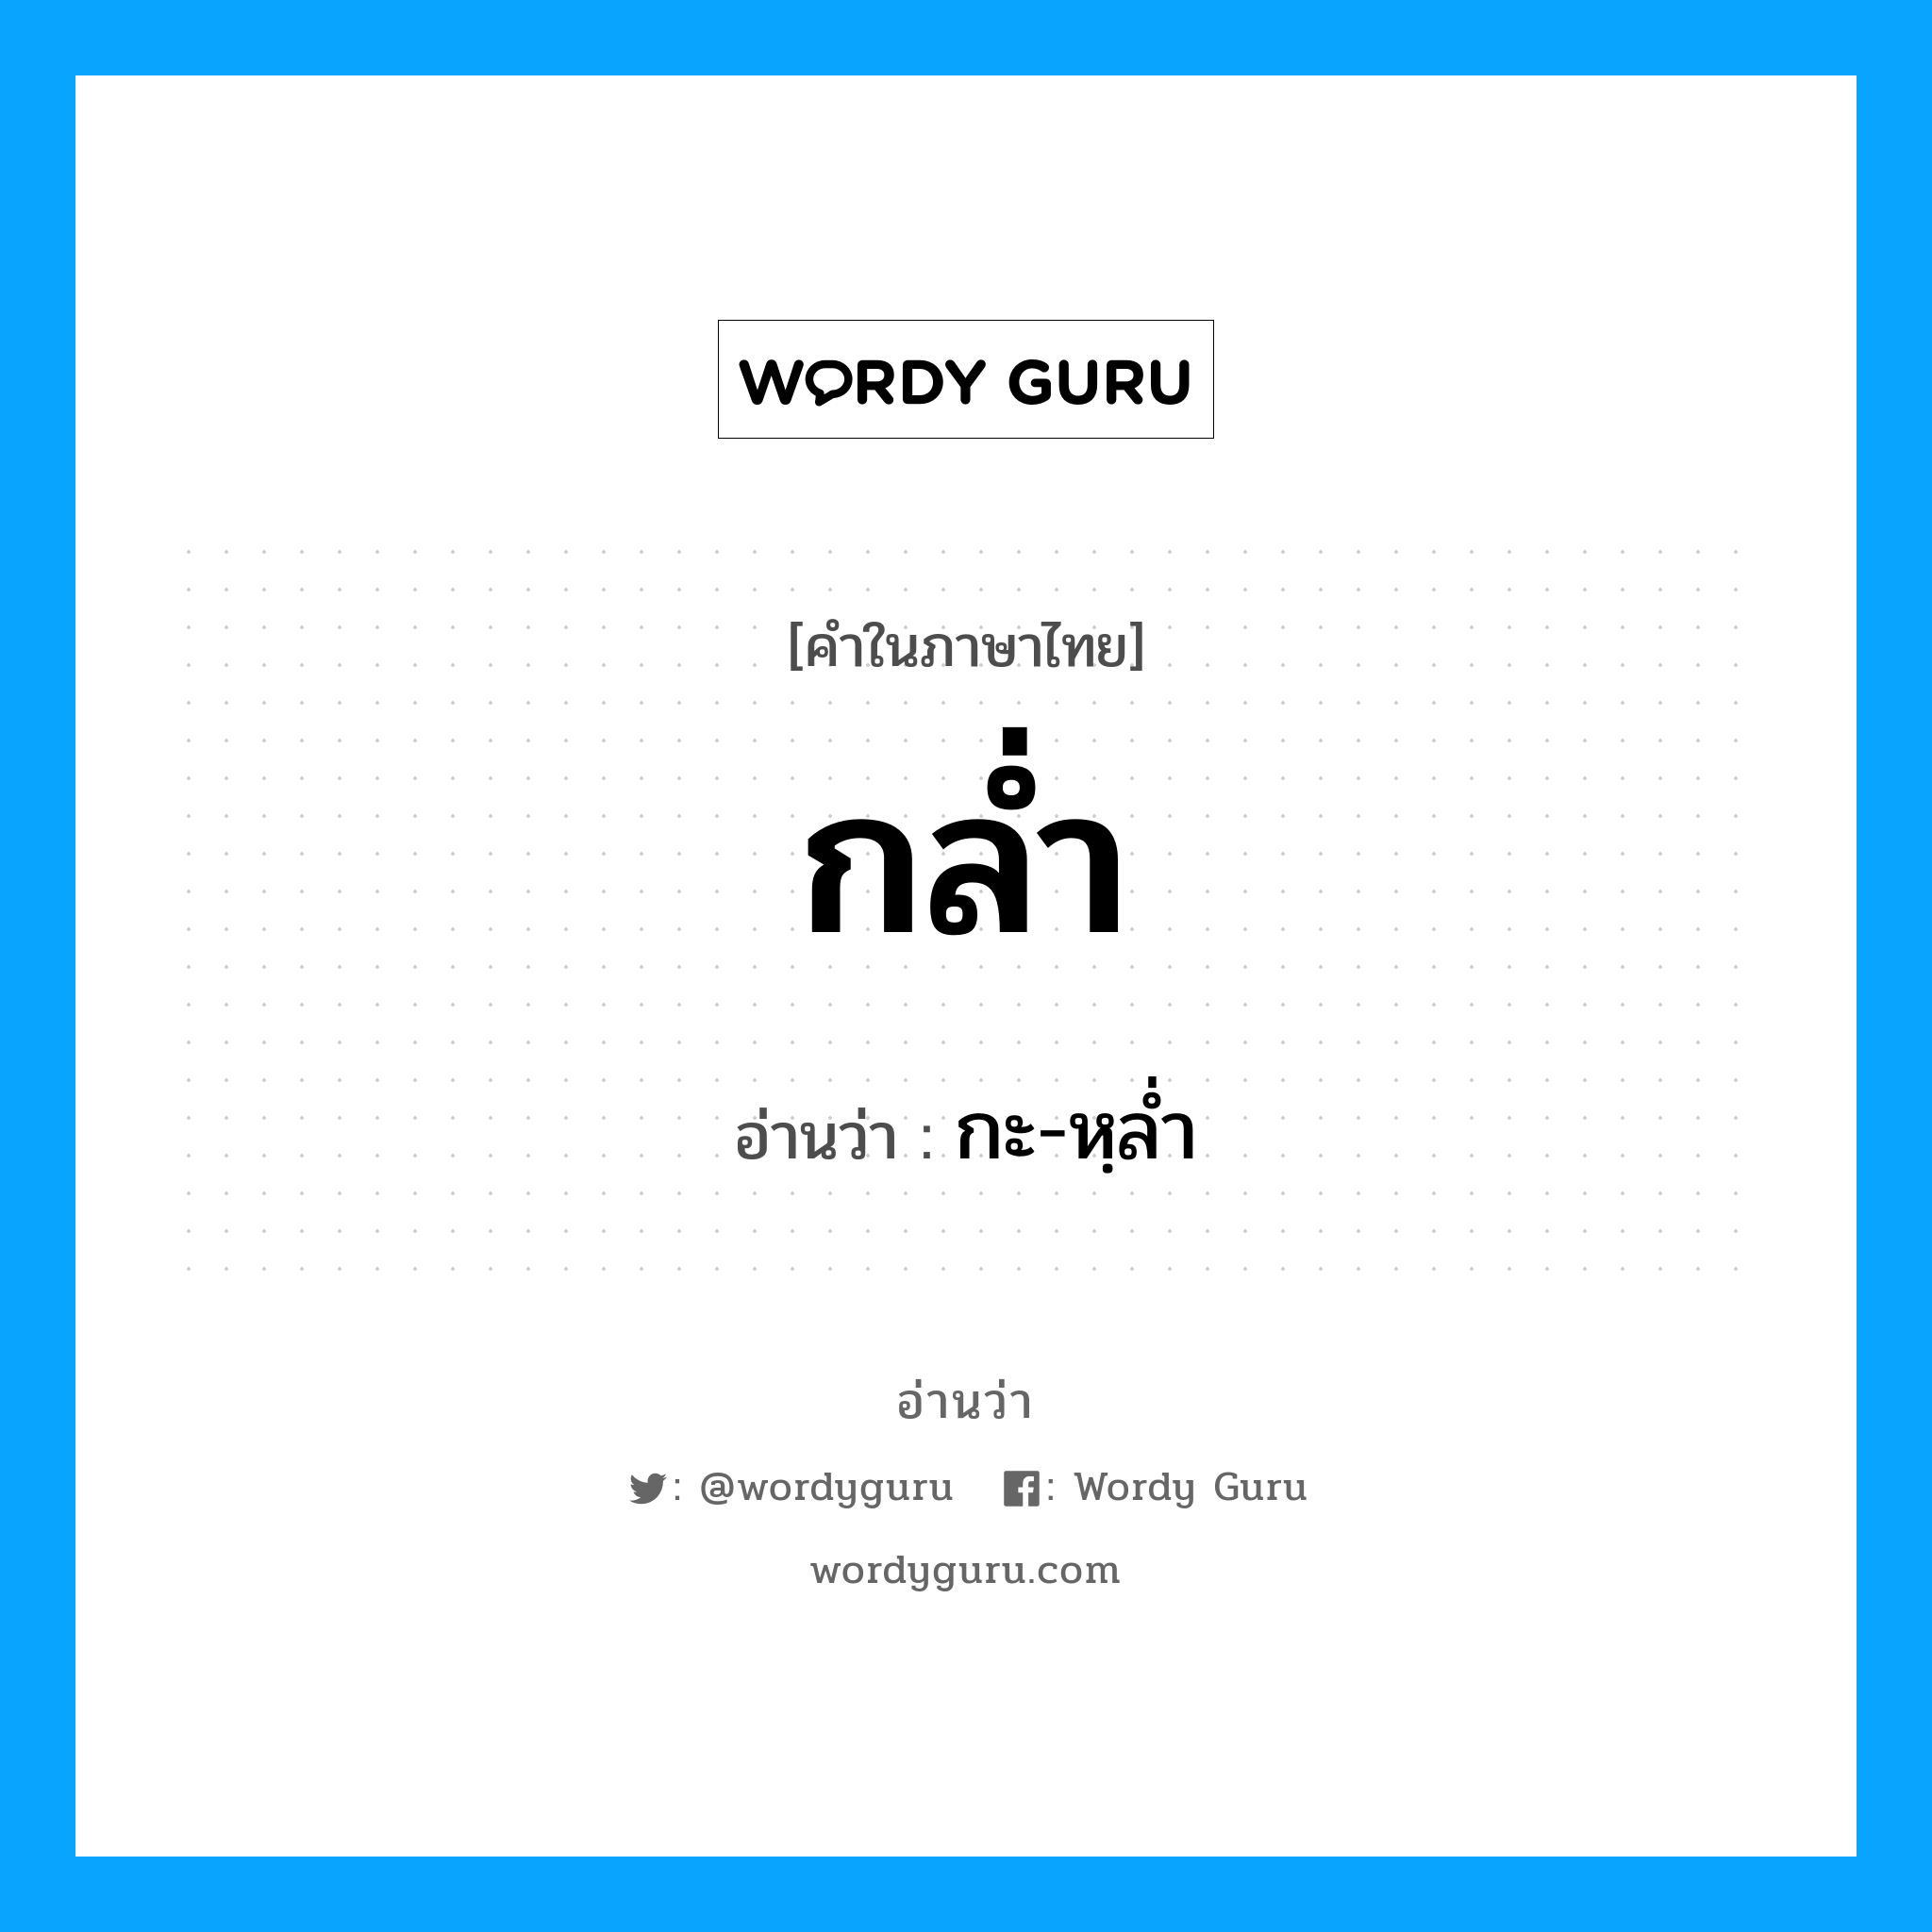 กะ-หฺลํ่า เป็นคำอ่านของคำไหน?, คำในภาษาไทย กะ-หฺลํ่า อ่านว่า กล่ำ